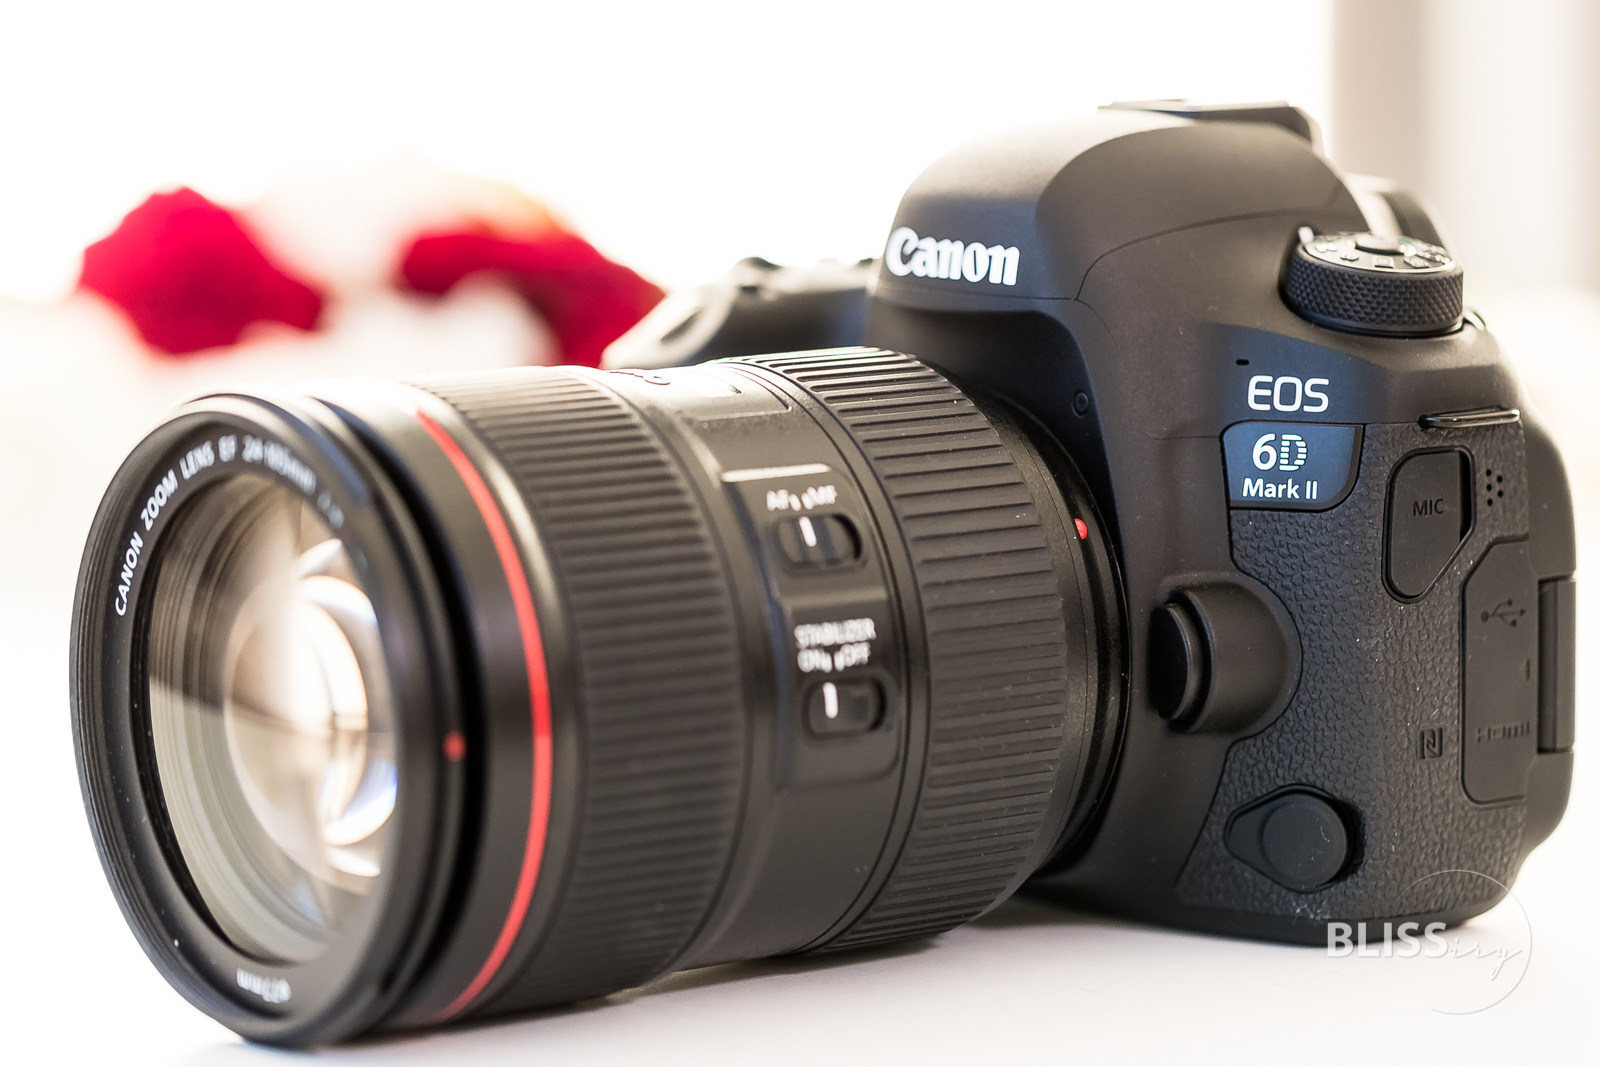 Canon EOS 6D Mark II Erfahrung und Bewertung - Vergleich Vollformat Kamera gegen Canon 5D Mark IV und Canon EOS 80D - Video-Format, Vorteile und Nachteile - Kaufempfehlung, Praxistipp